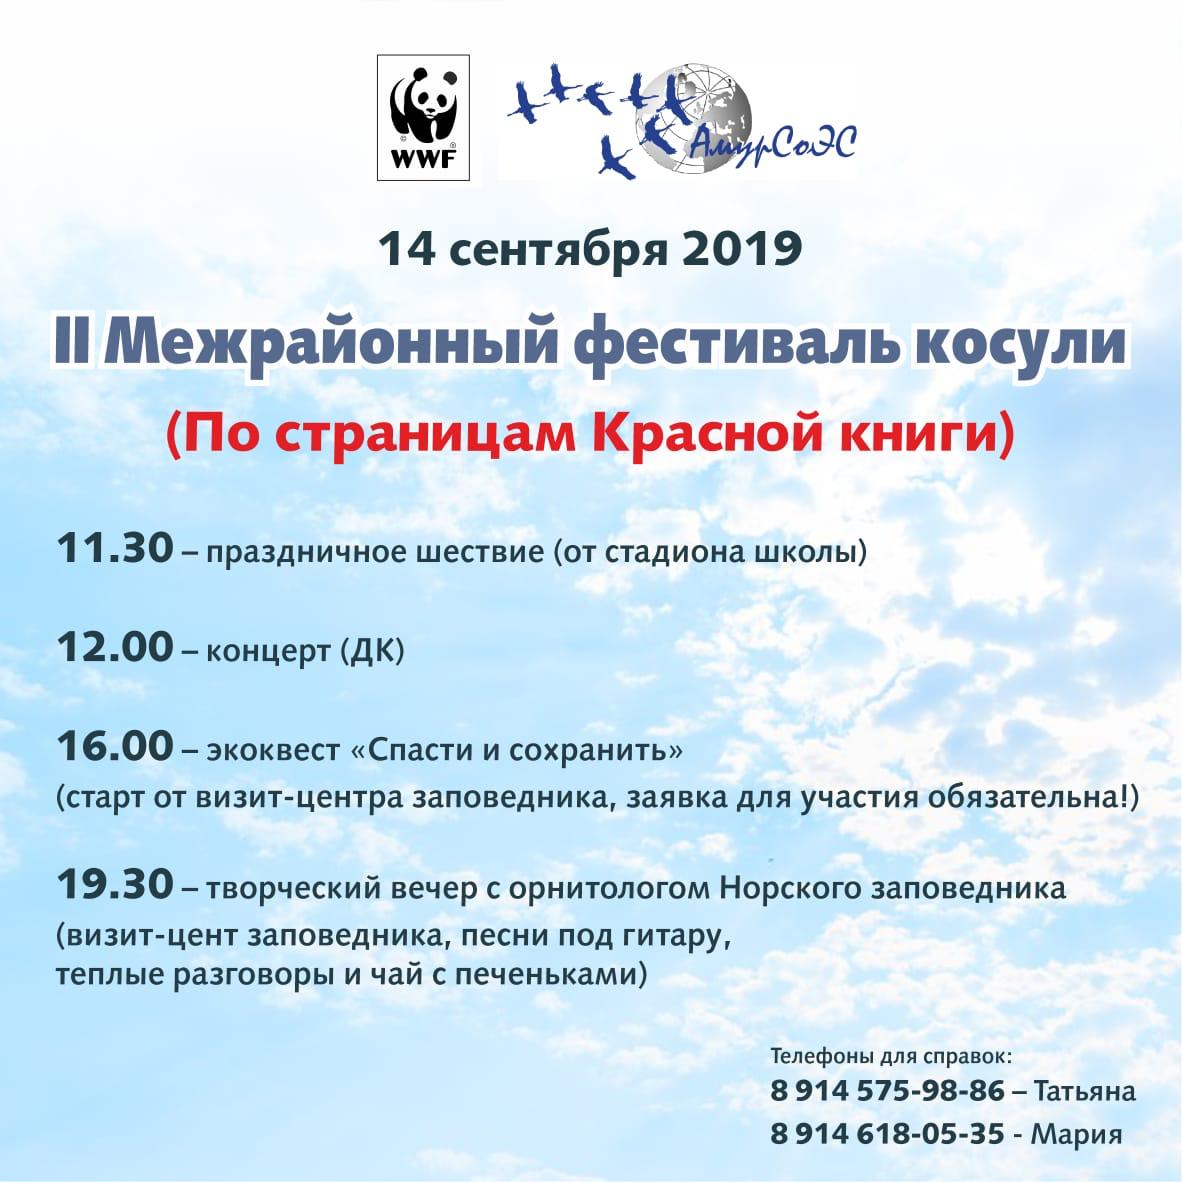 II Открытый межрайонный экологический фестиваль «День сибирской косули»